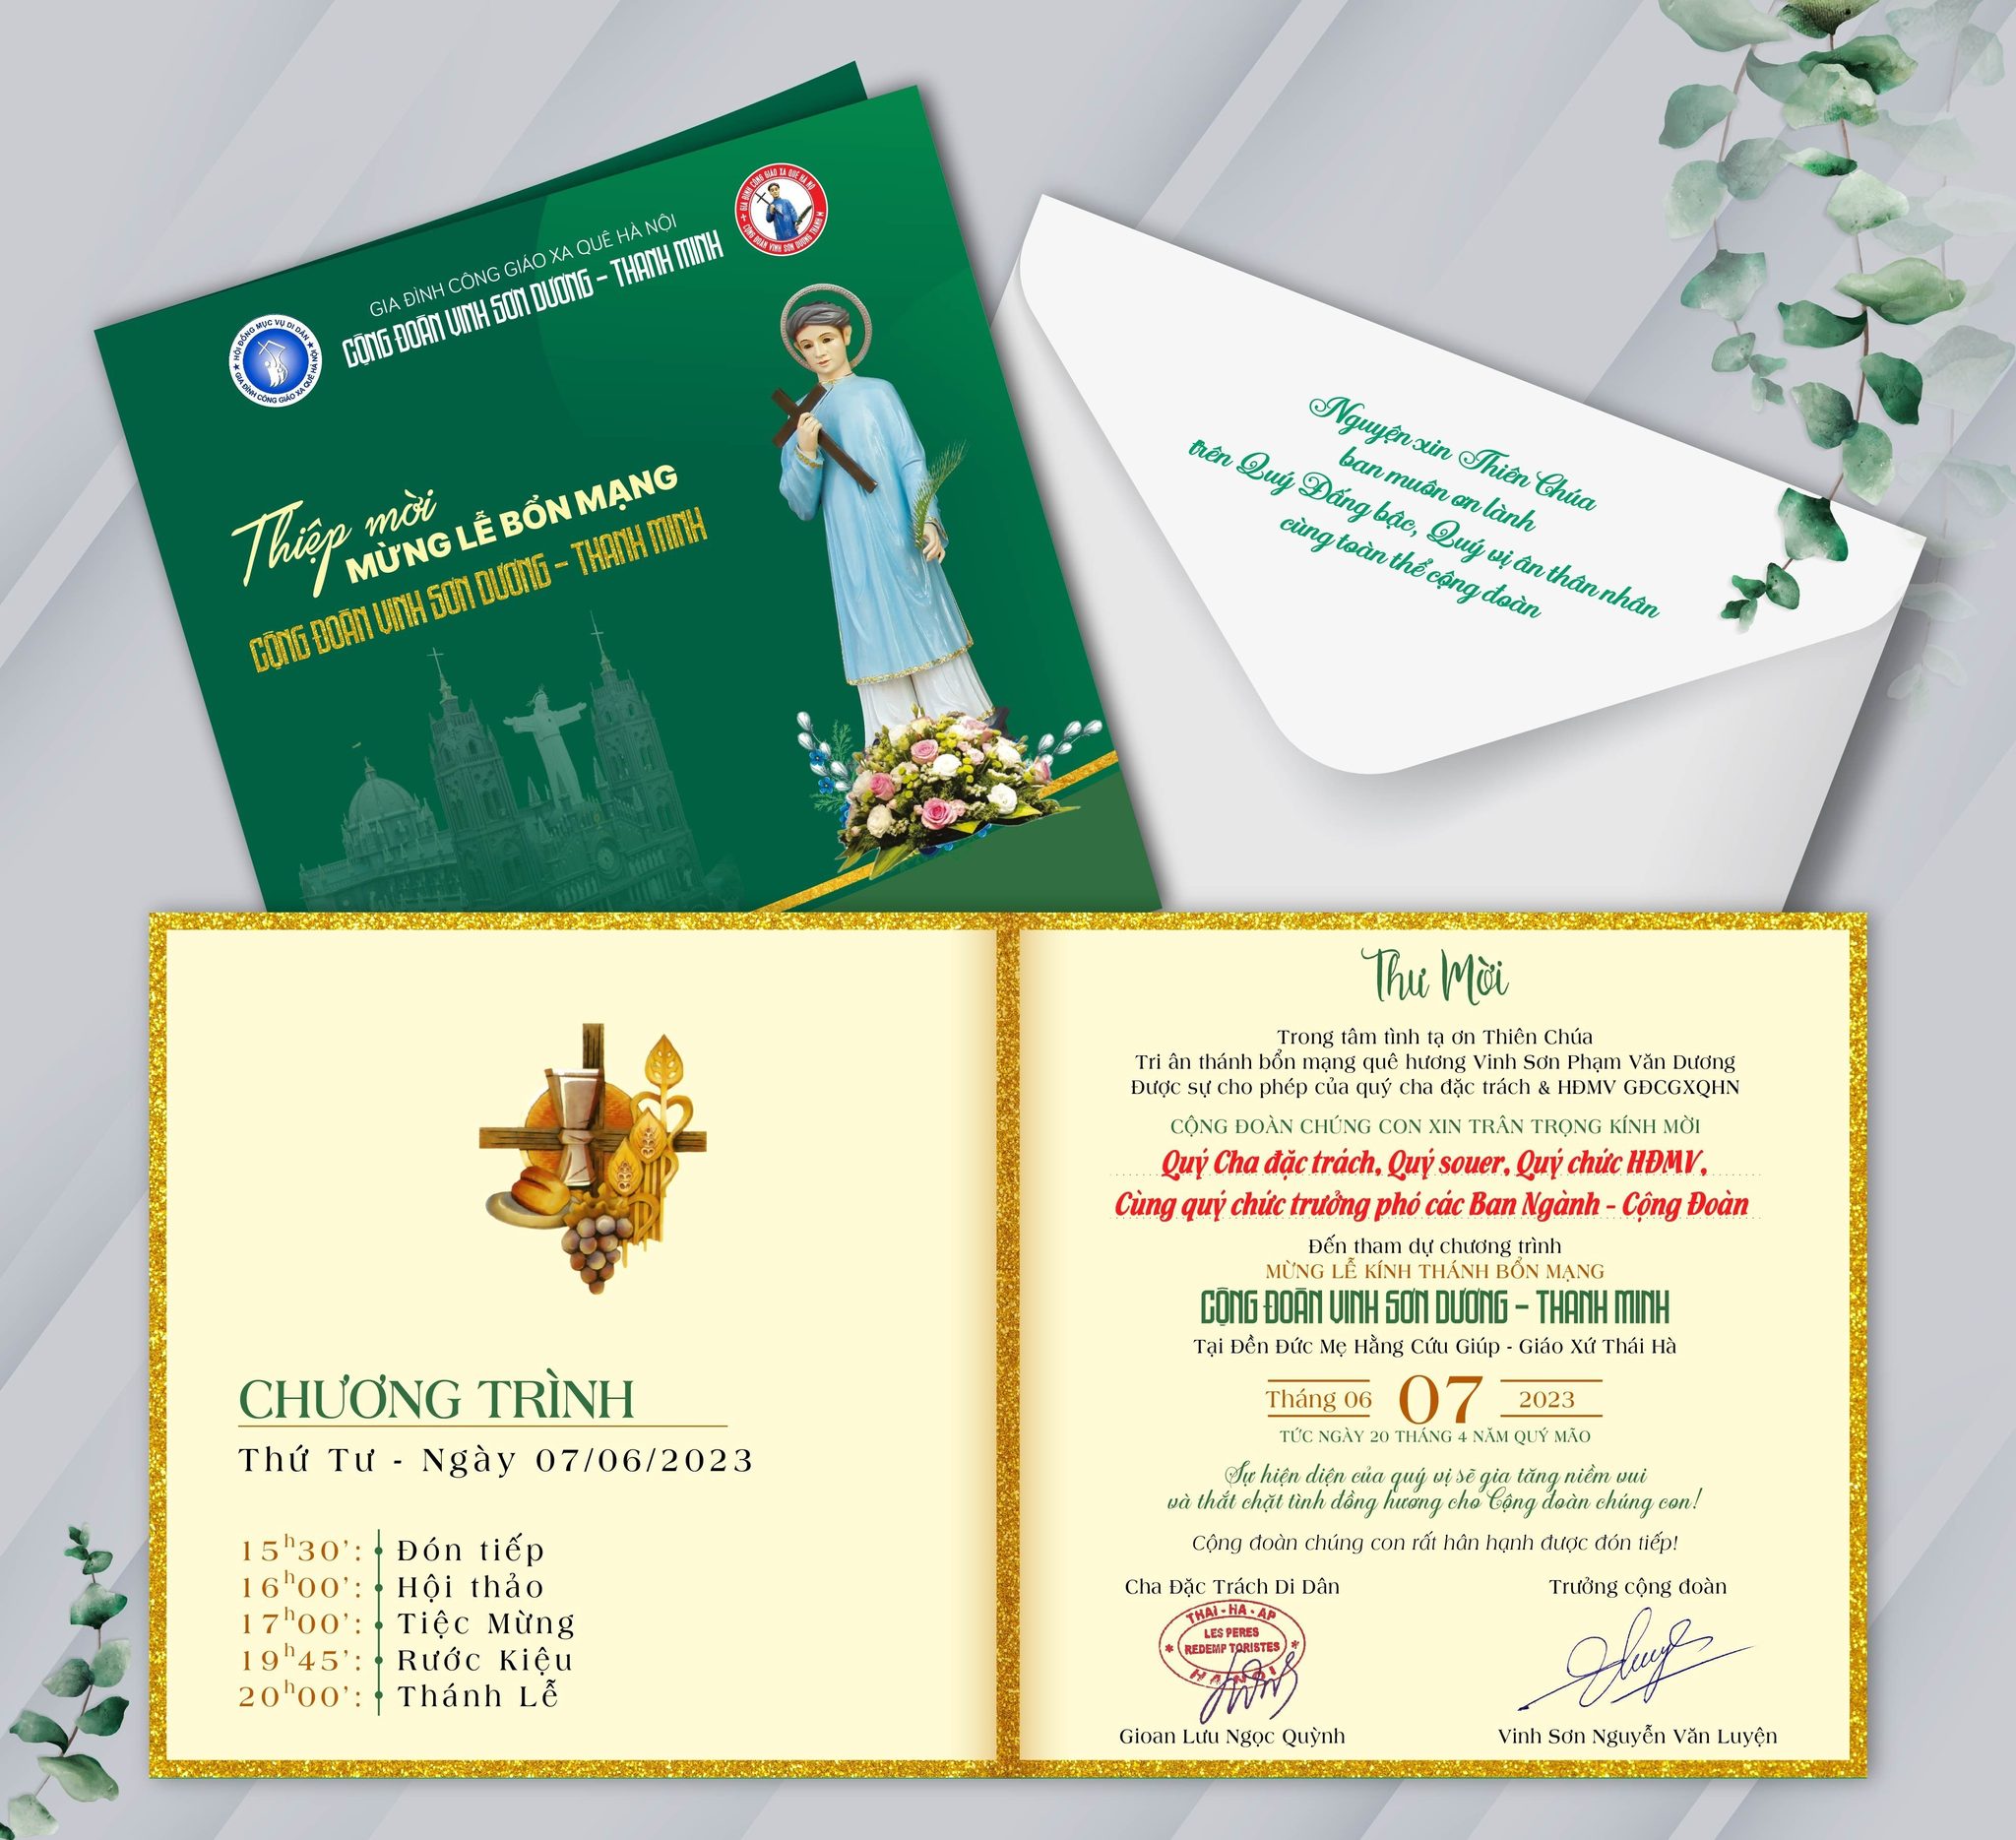 Thông báo: Thư mời mừng lễ bổn mạng l Cộng đoàn Vinh Sơn Dương - Thanh Minh